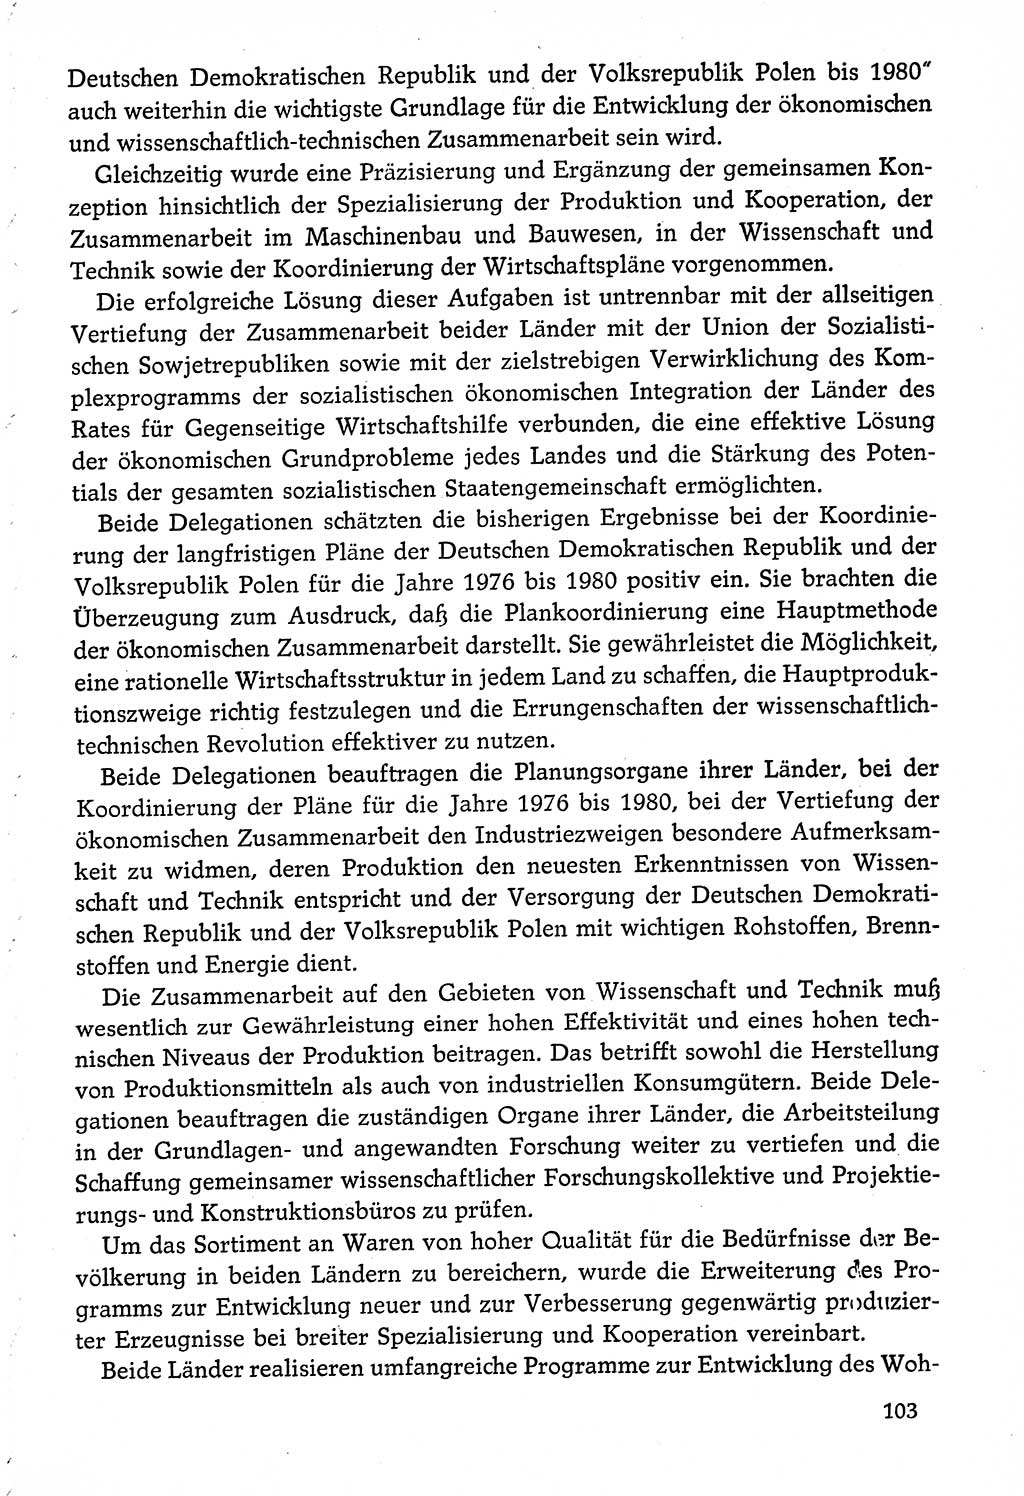 Dokumente der Sozialistischen Einheitspartei Deutschlands (SED) [Deutsche Demokratische Republik (DDR)] 1974-1975, Seite 103 (Dok. SED DDR 1978, Bd. ⅩⅤ, S. 103)